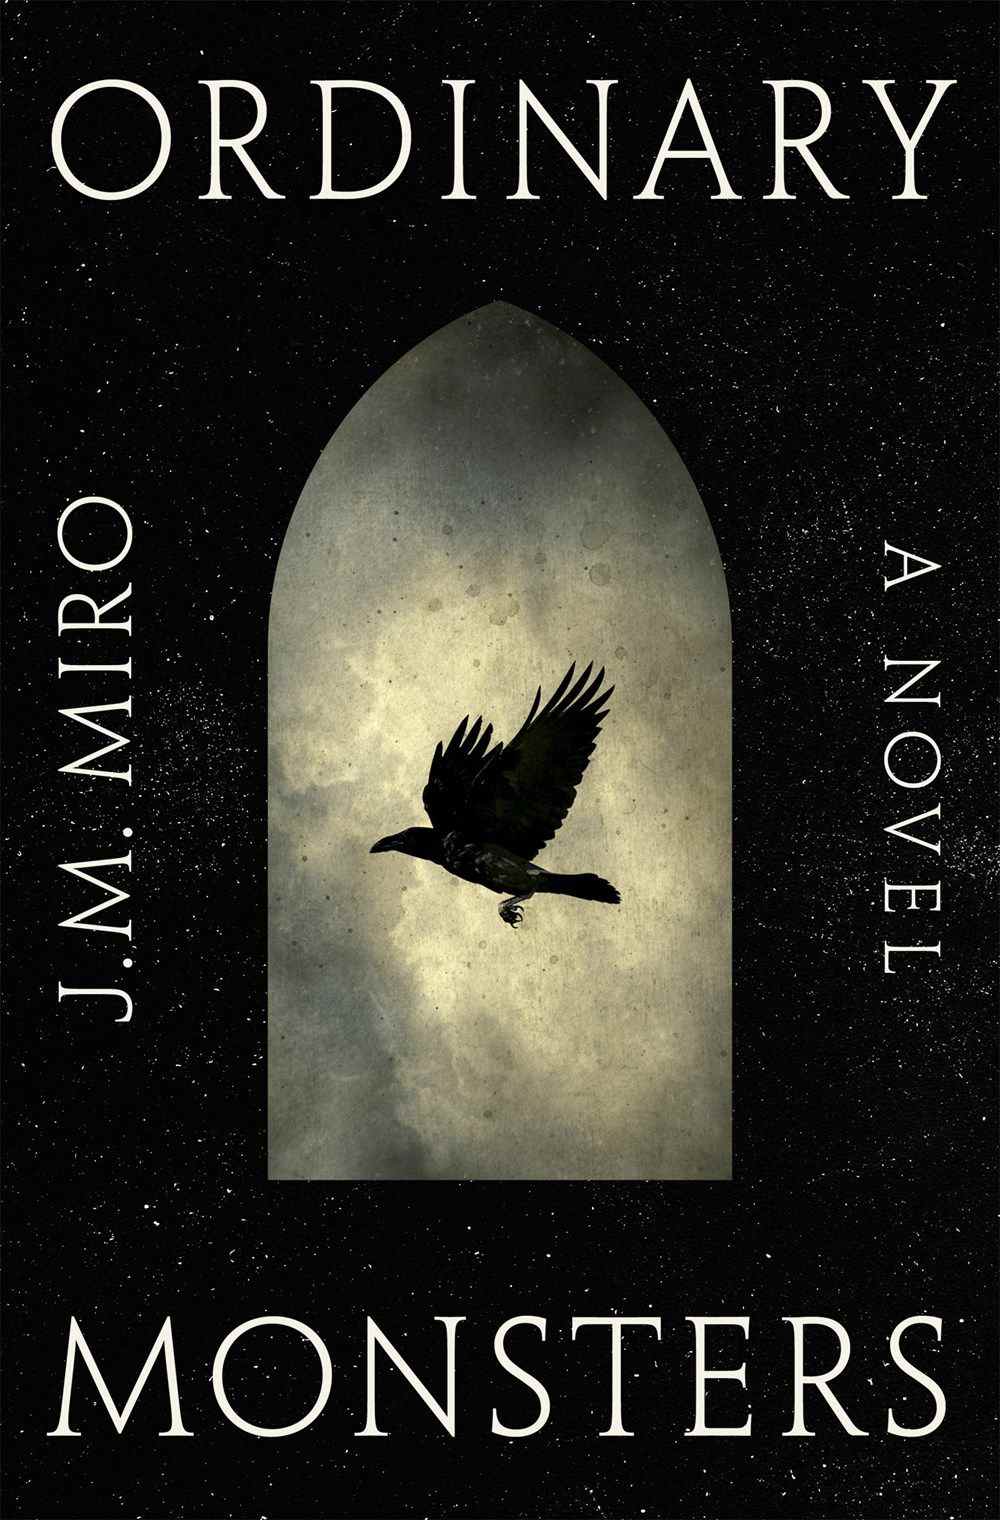 Image de couverture pour Ordinary Monsters de JM Miro, mettant en scène un oiseau noir volant sur fond de nuages ​​et de ciel nocturne.